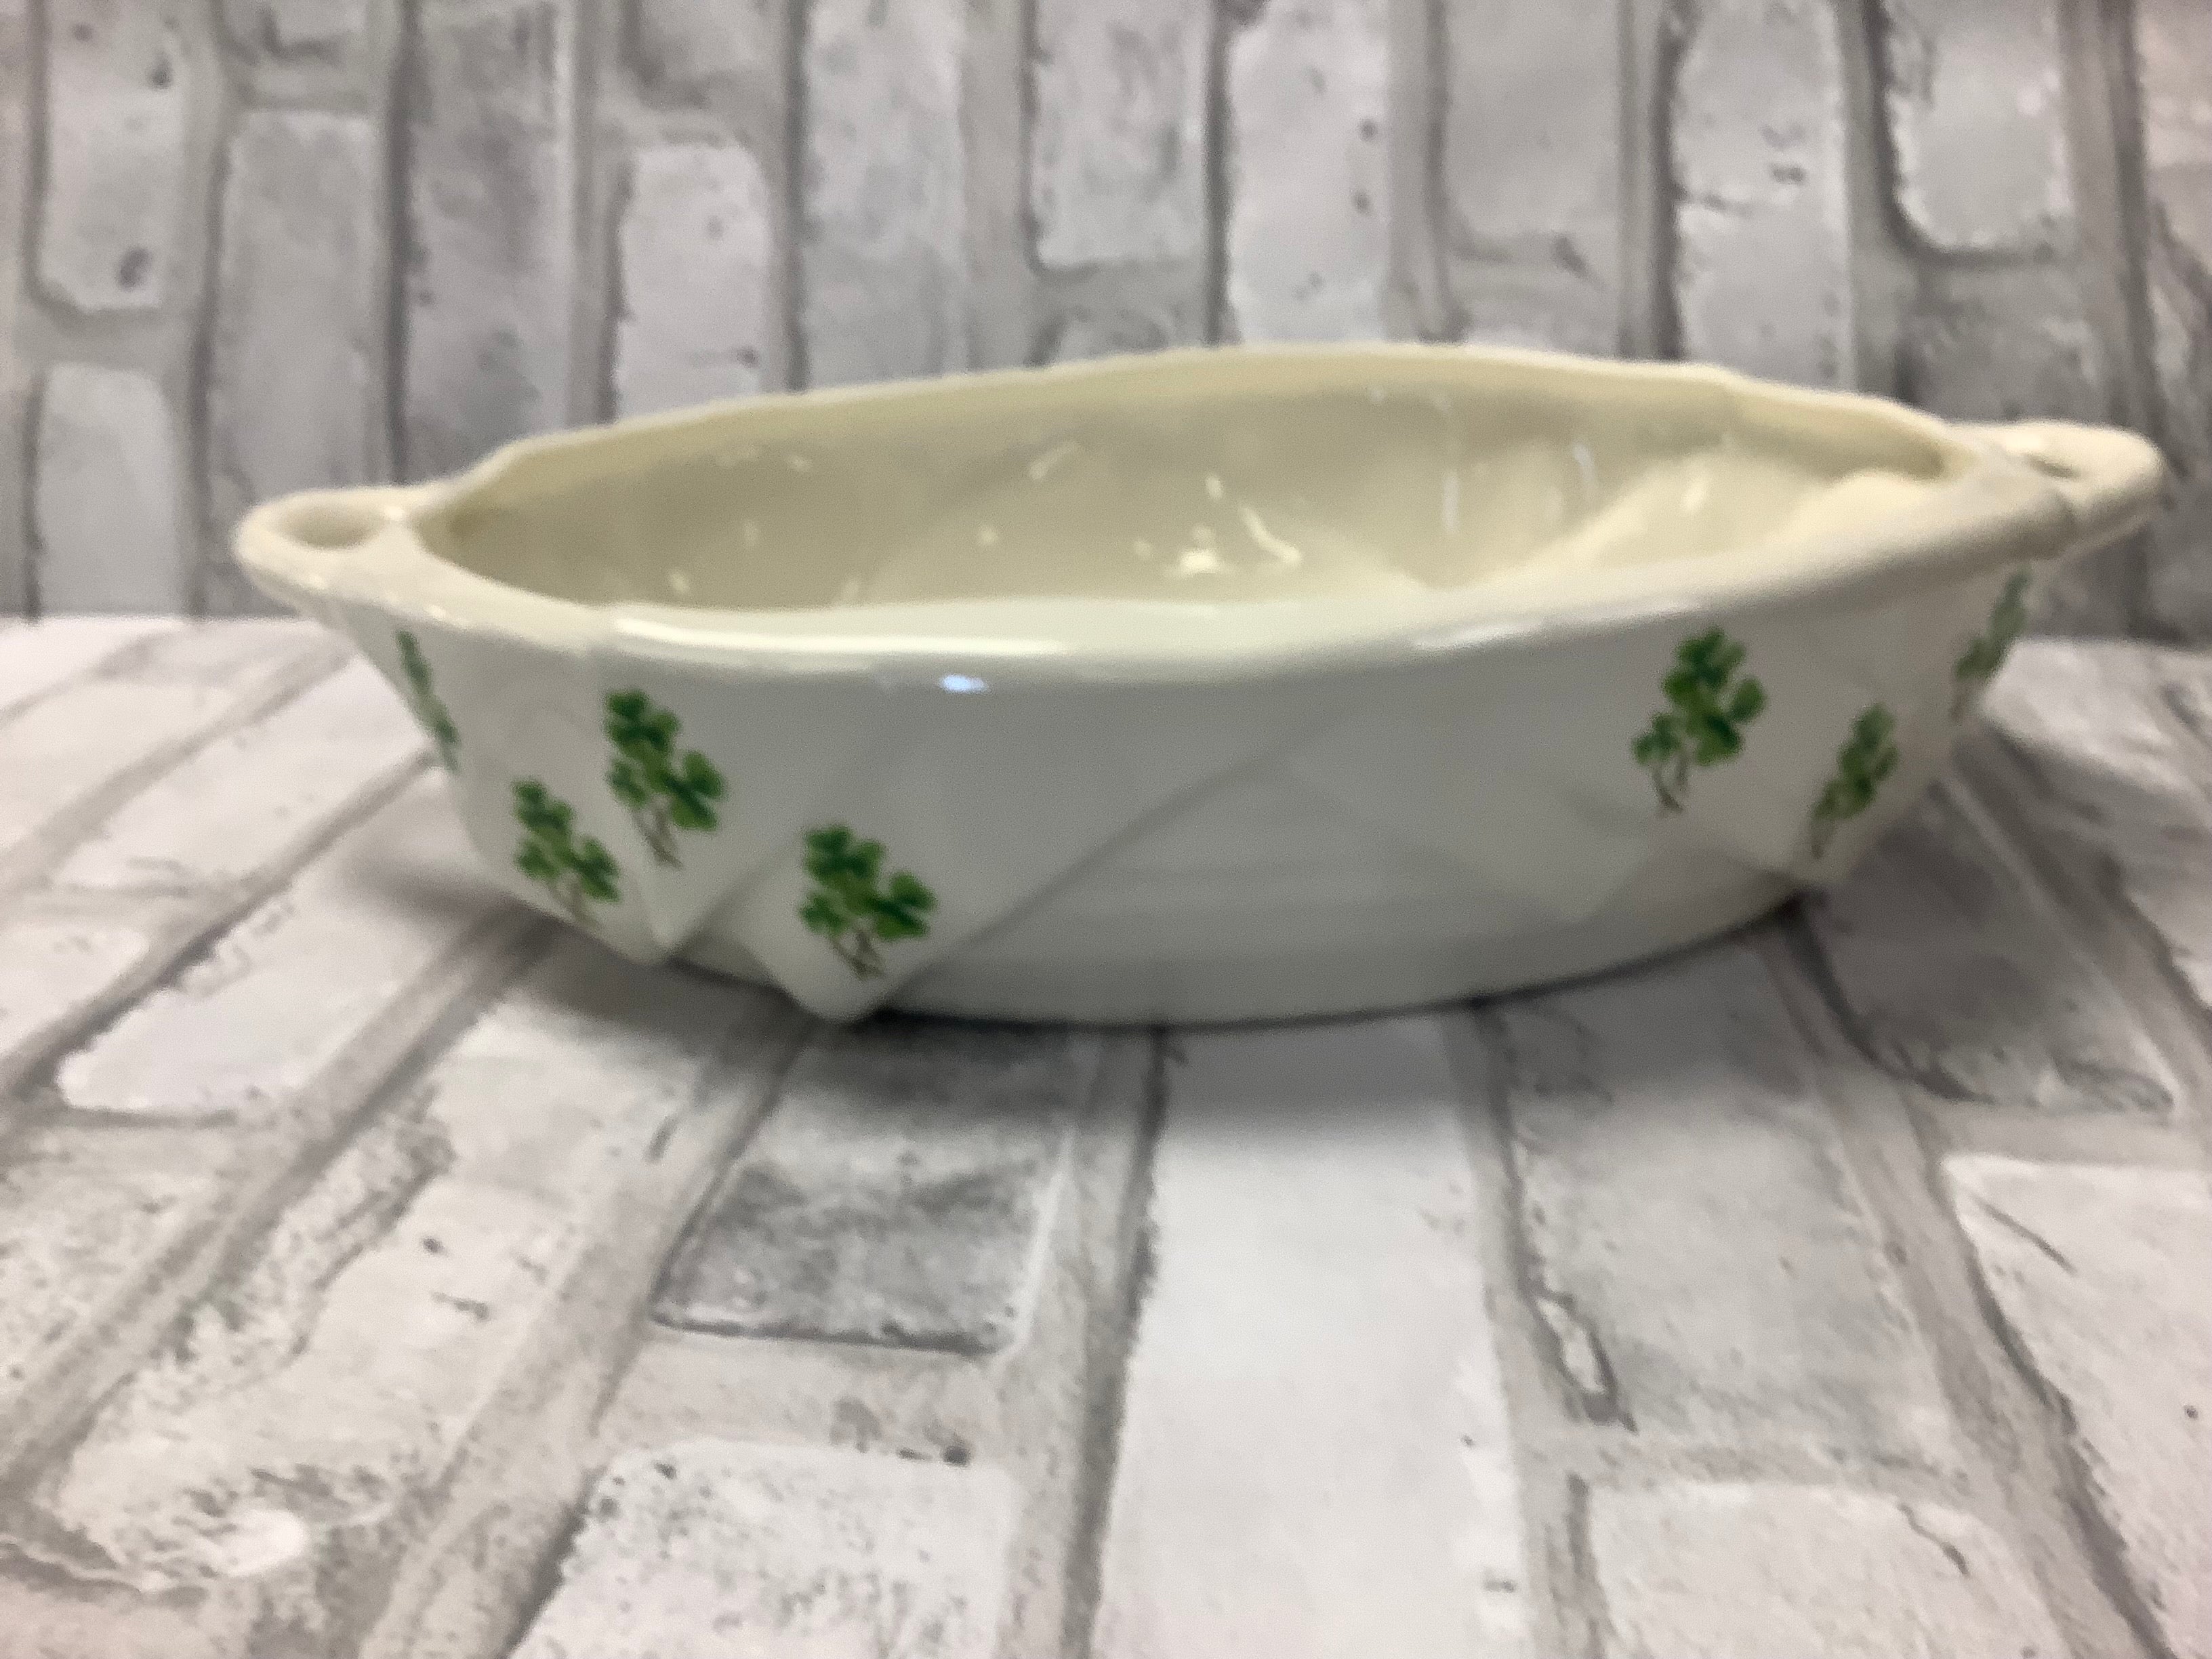 Irish blessing ceramic dish